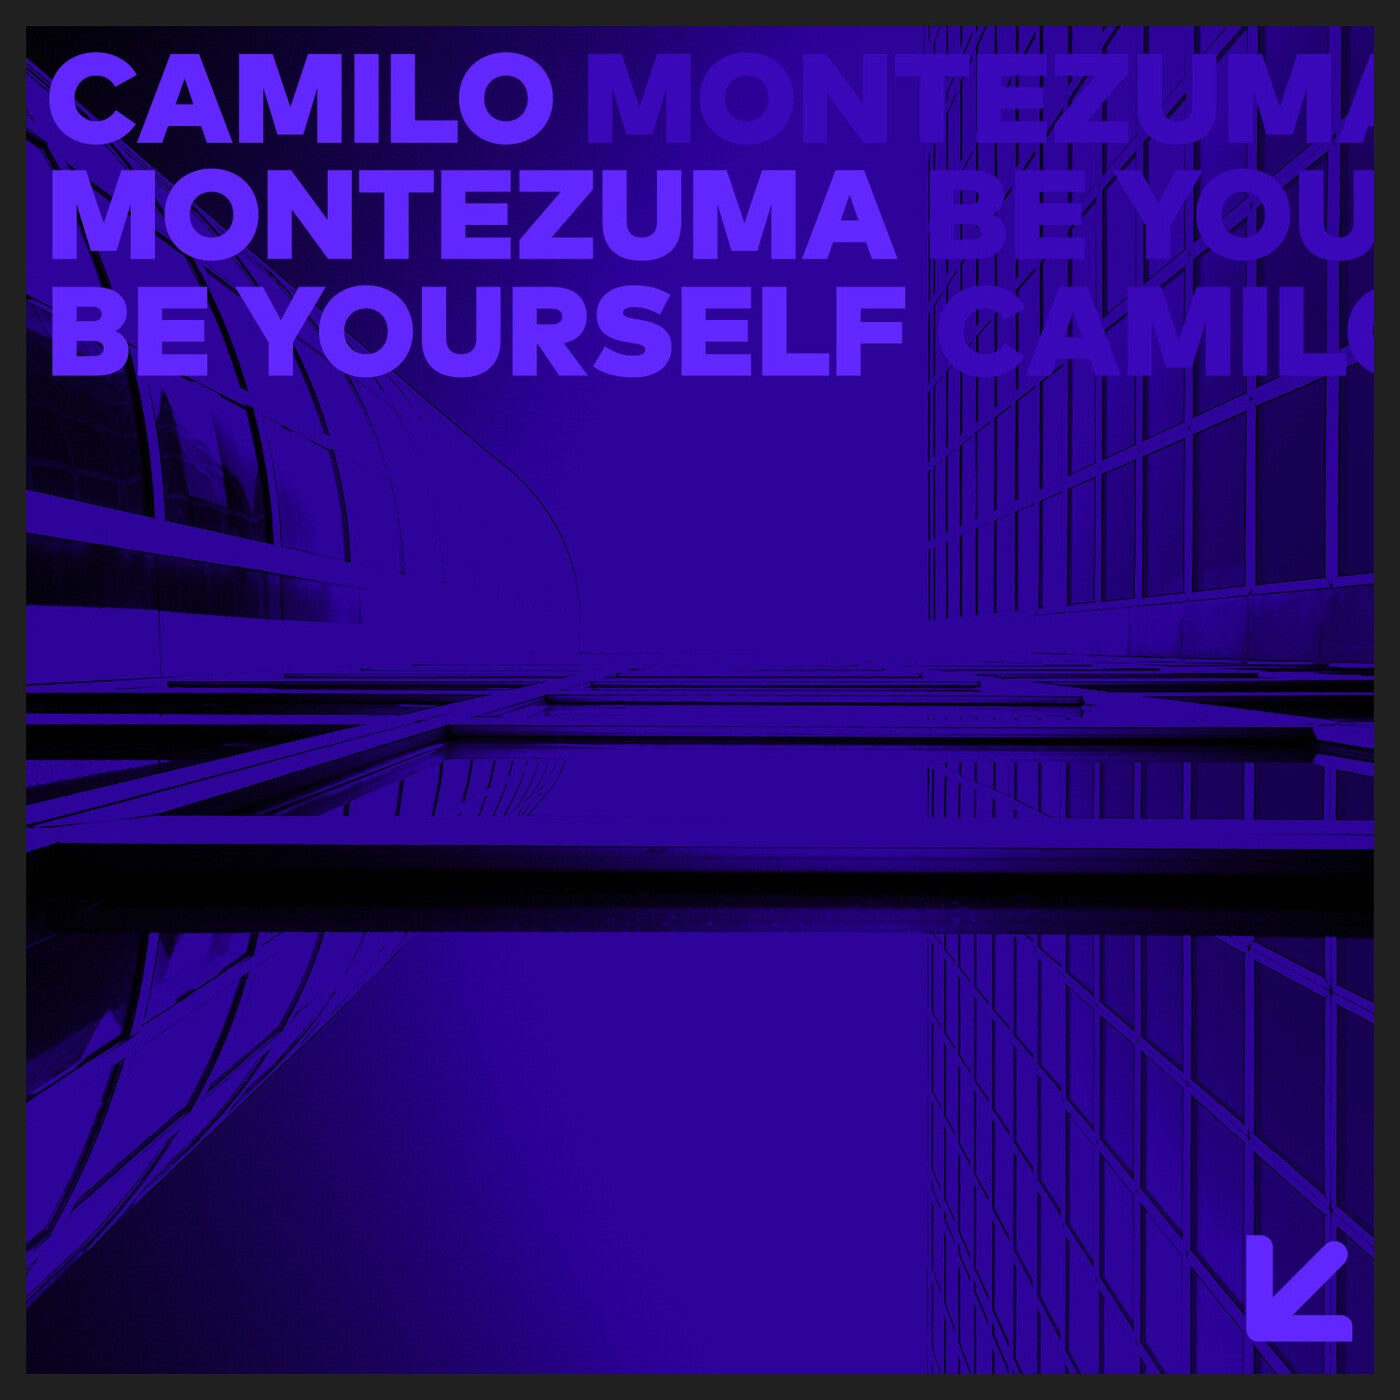 Cover - Camilo Montezuma - Be Yourself (Original Mix)